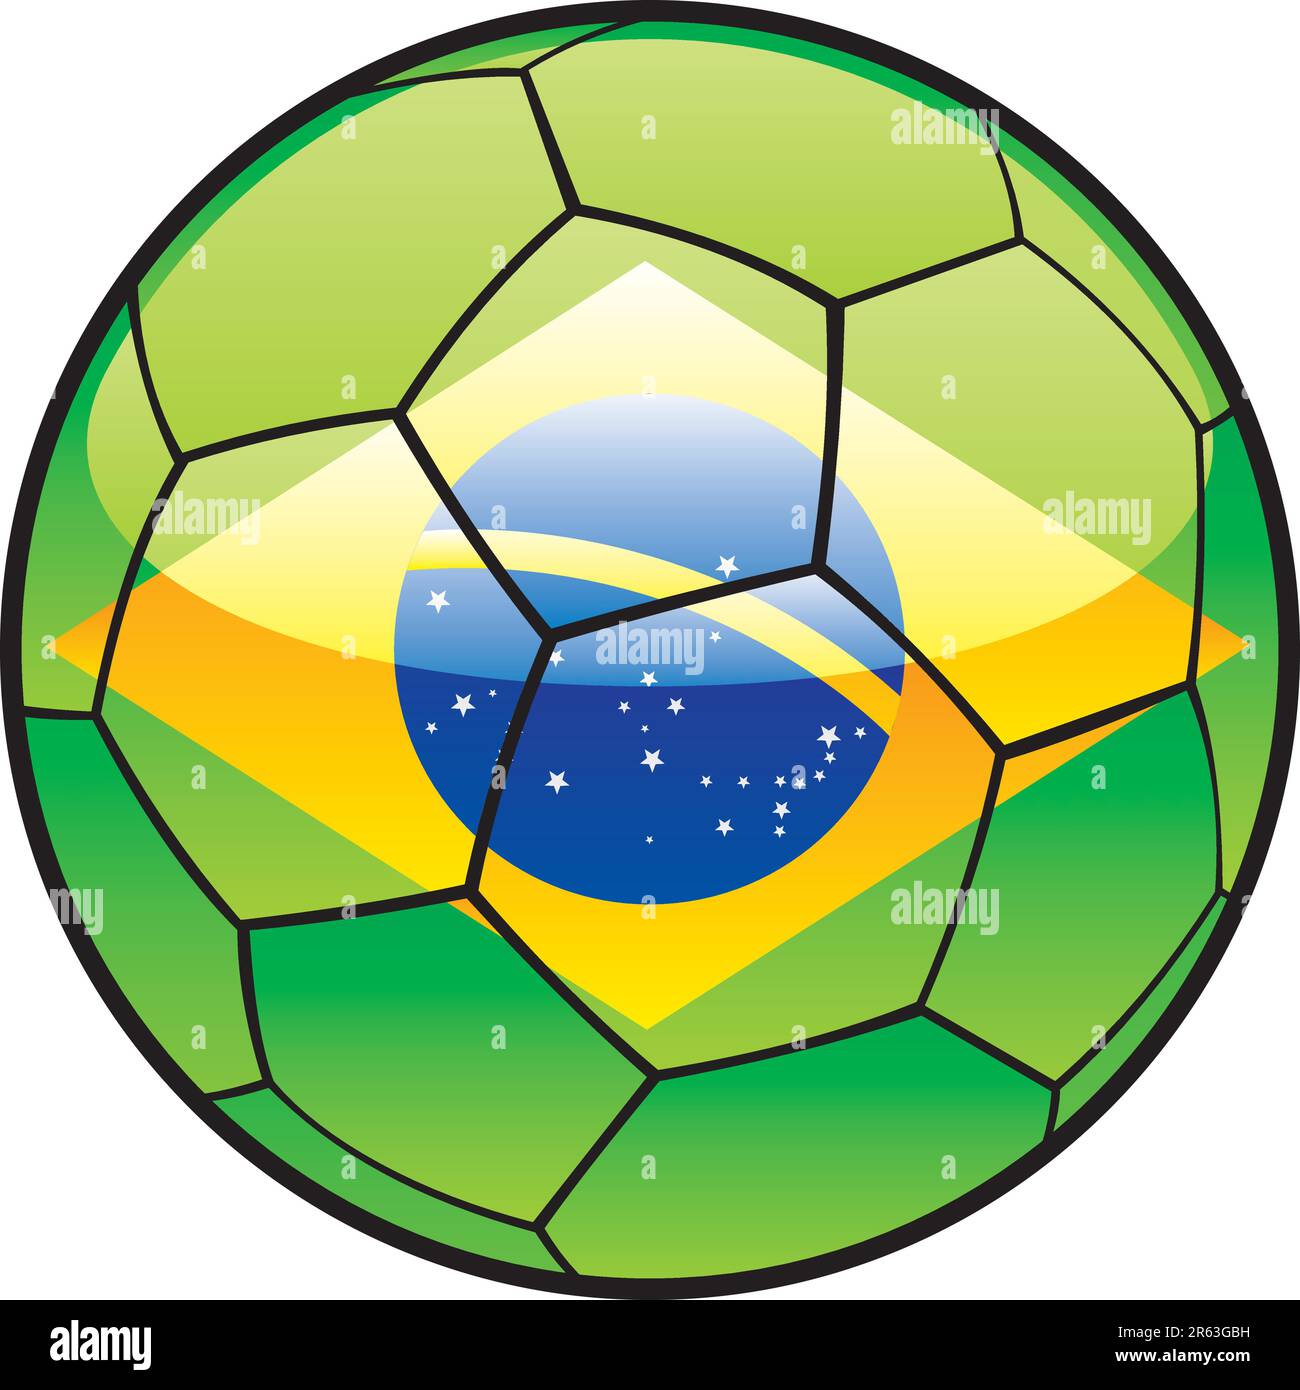 fully editable illustration flag of Brazil on soccer ball Stock Vector